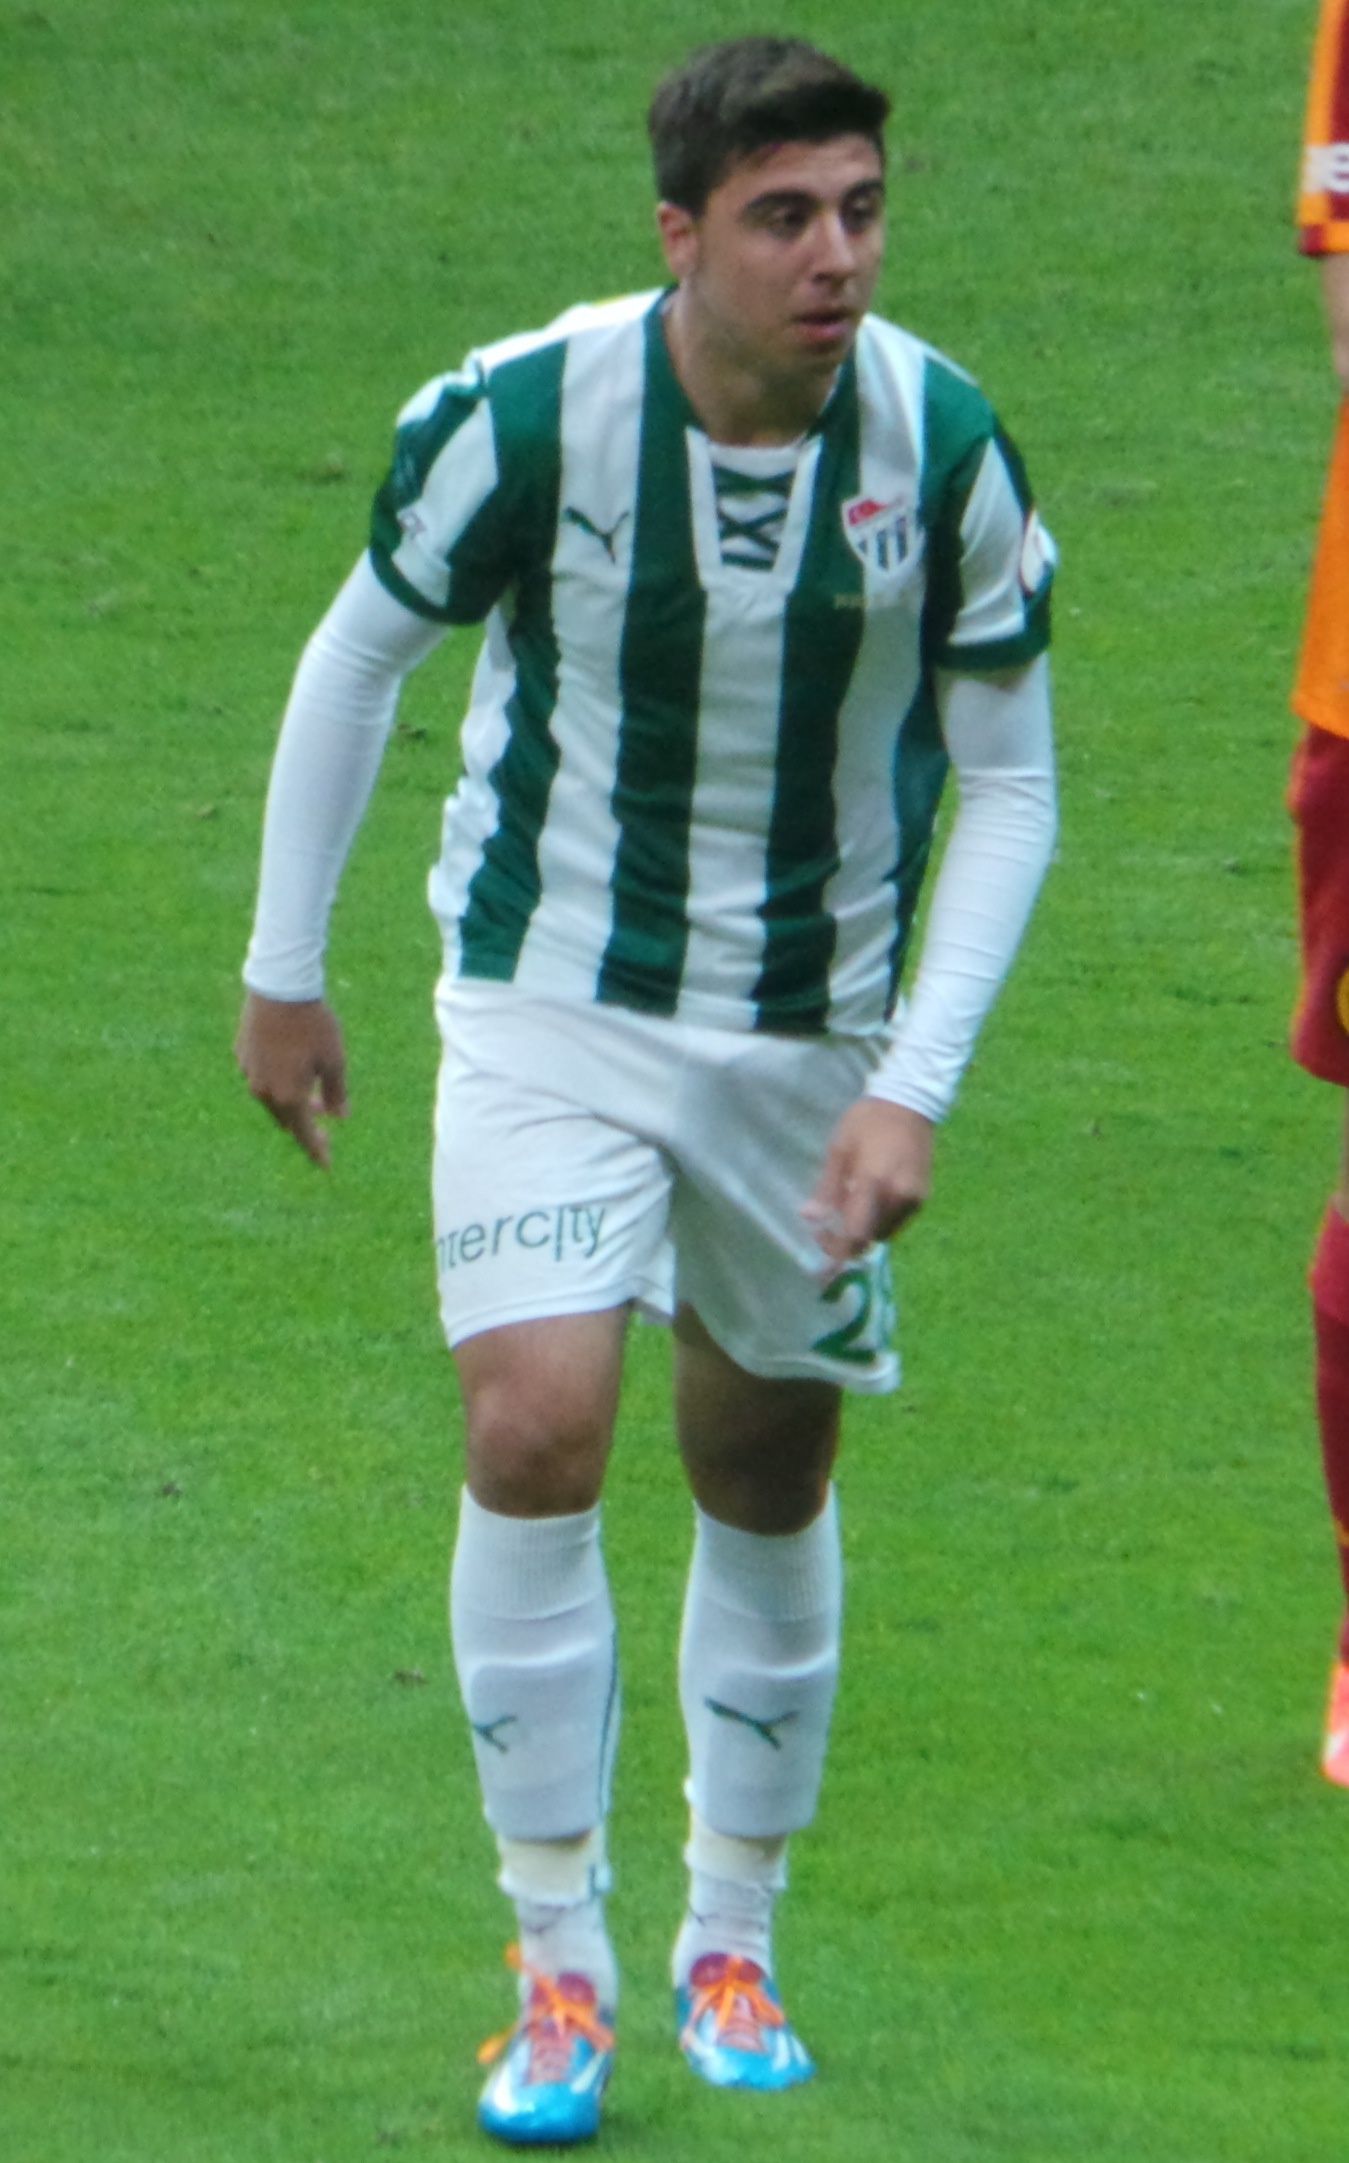 Ozan Tufan, centrocampista del Bursaspor e internacional con la selección de Turquía. Ultraslansi.